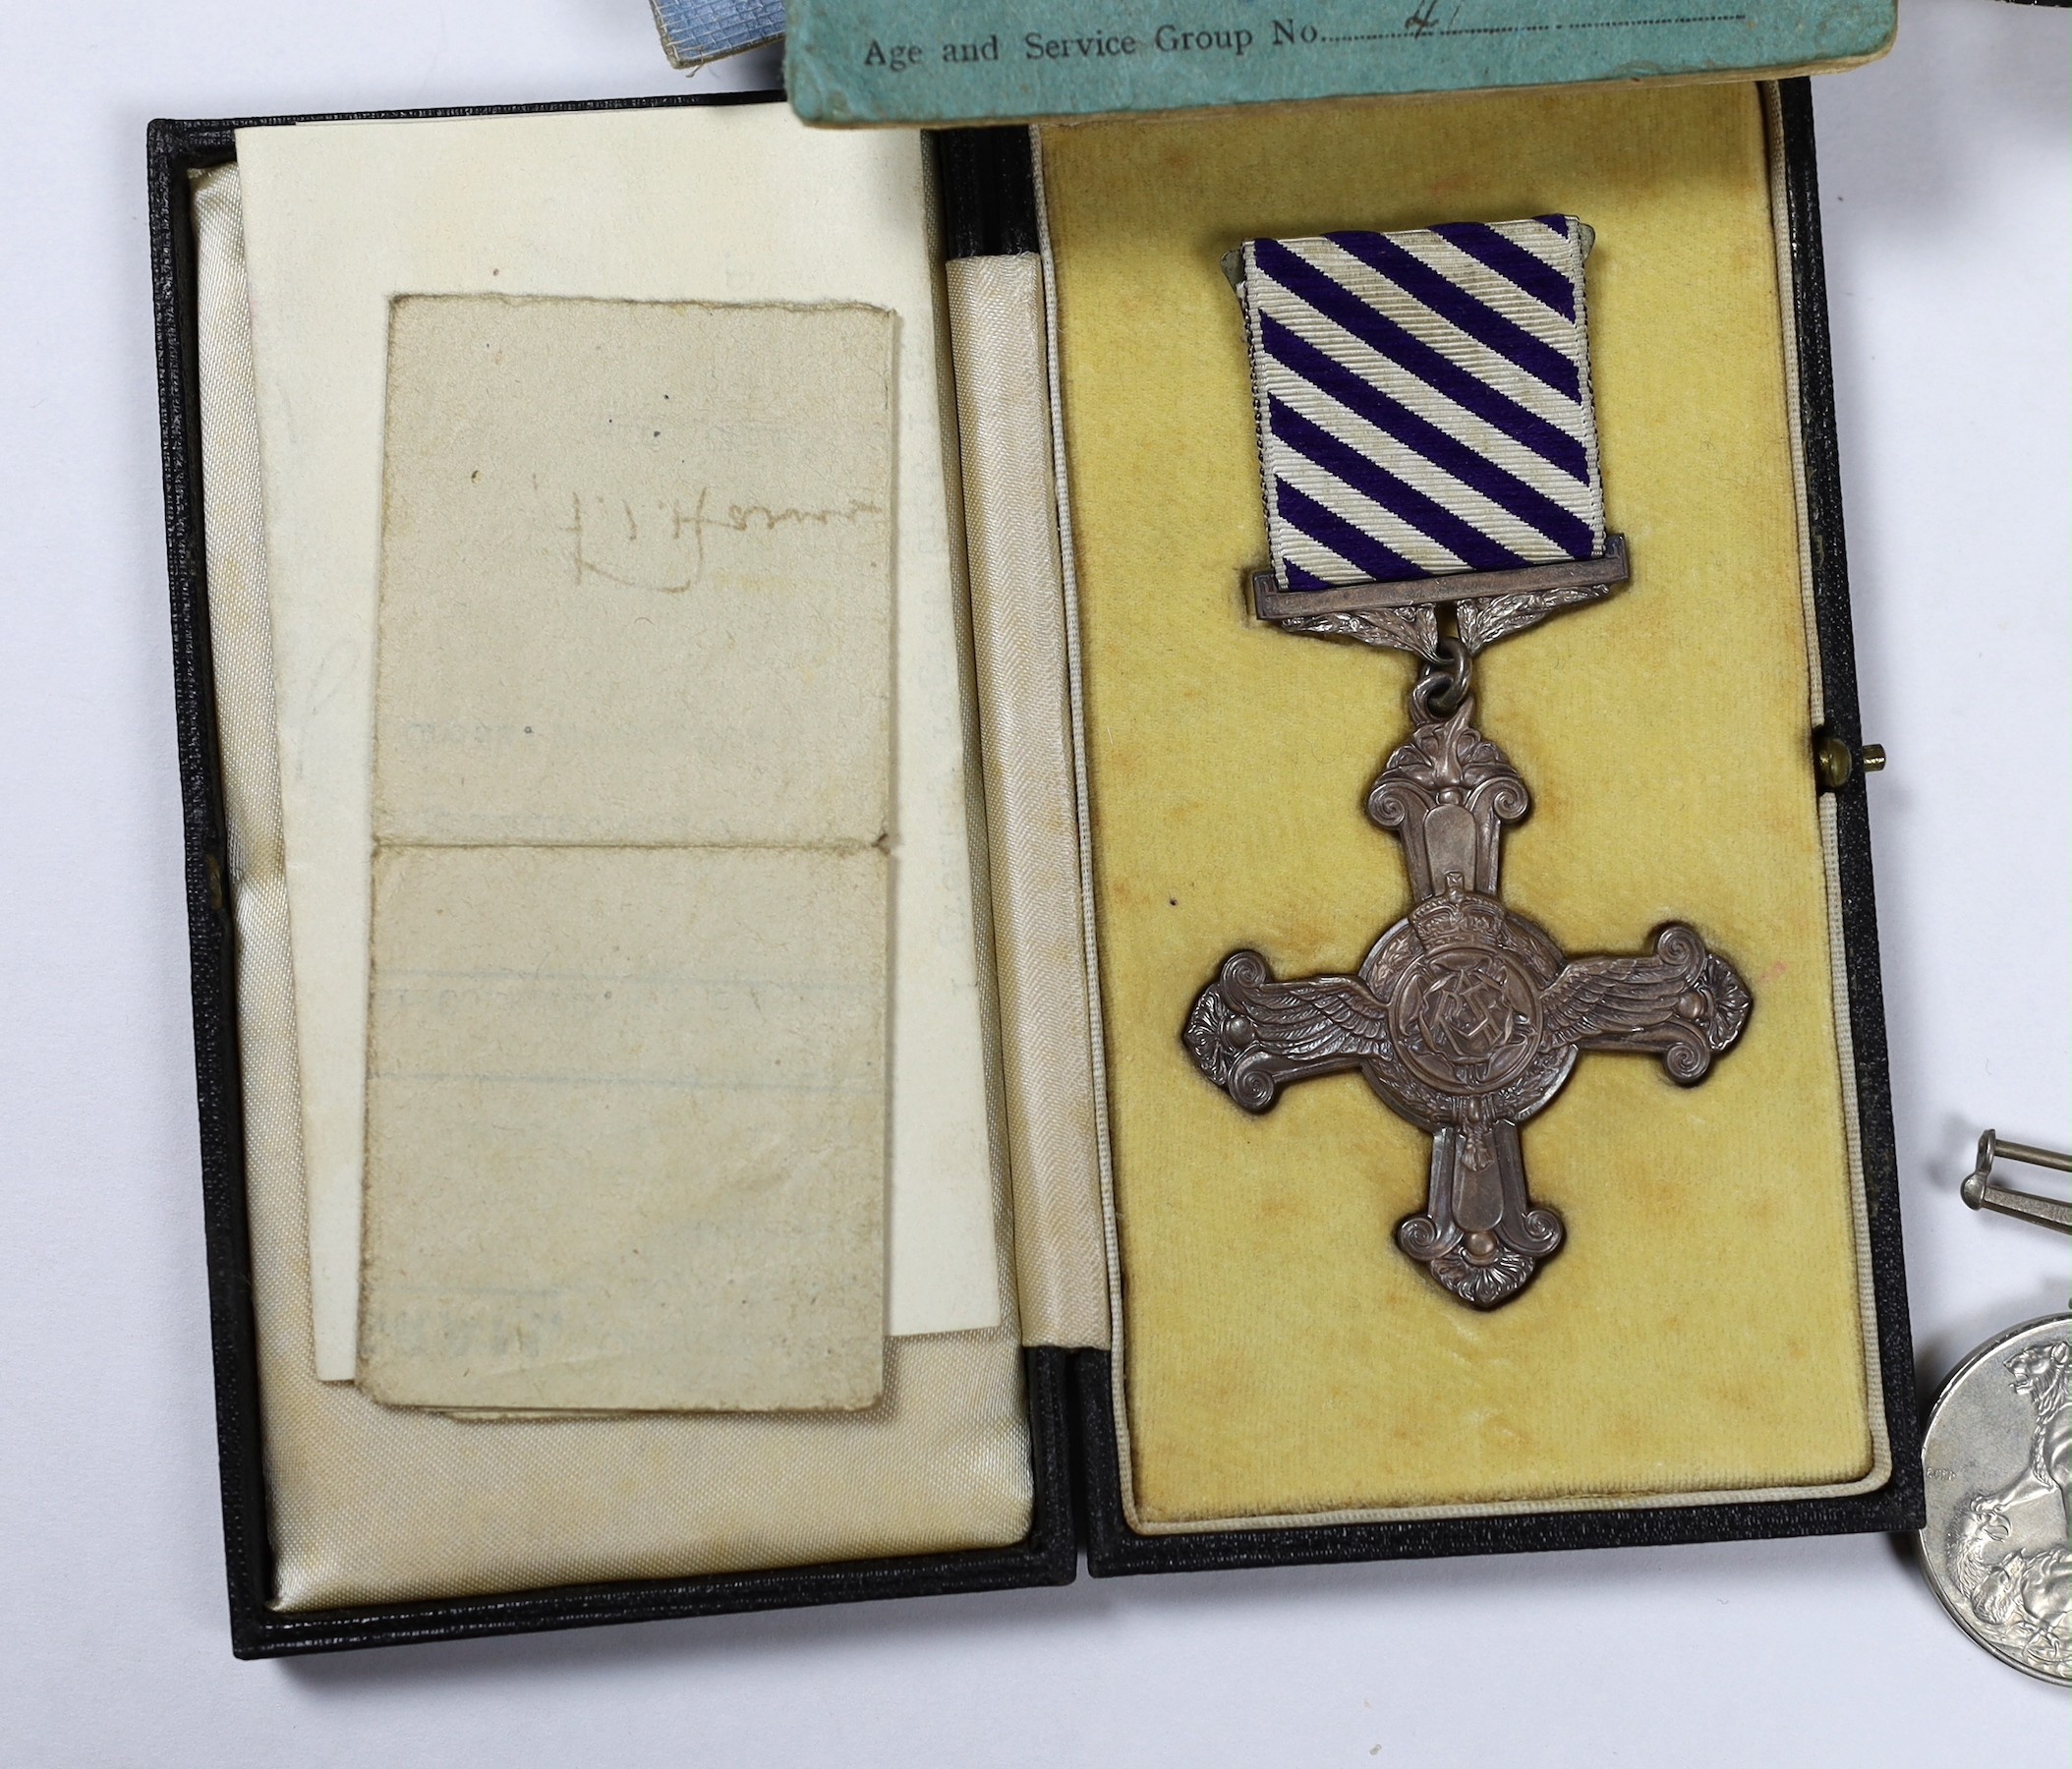 A WW2 DFC medal group to 1451840 Flight Lieutenant K.H.Dempster